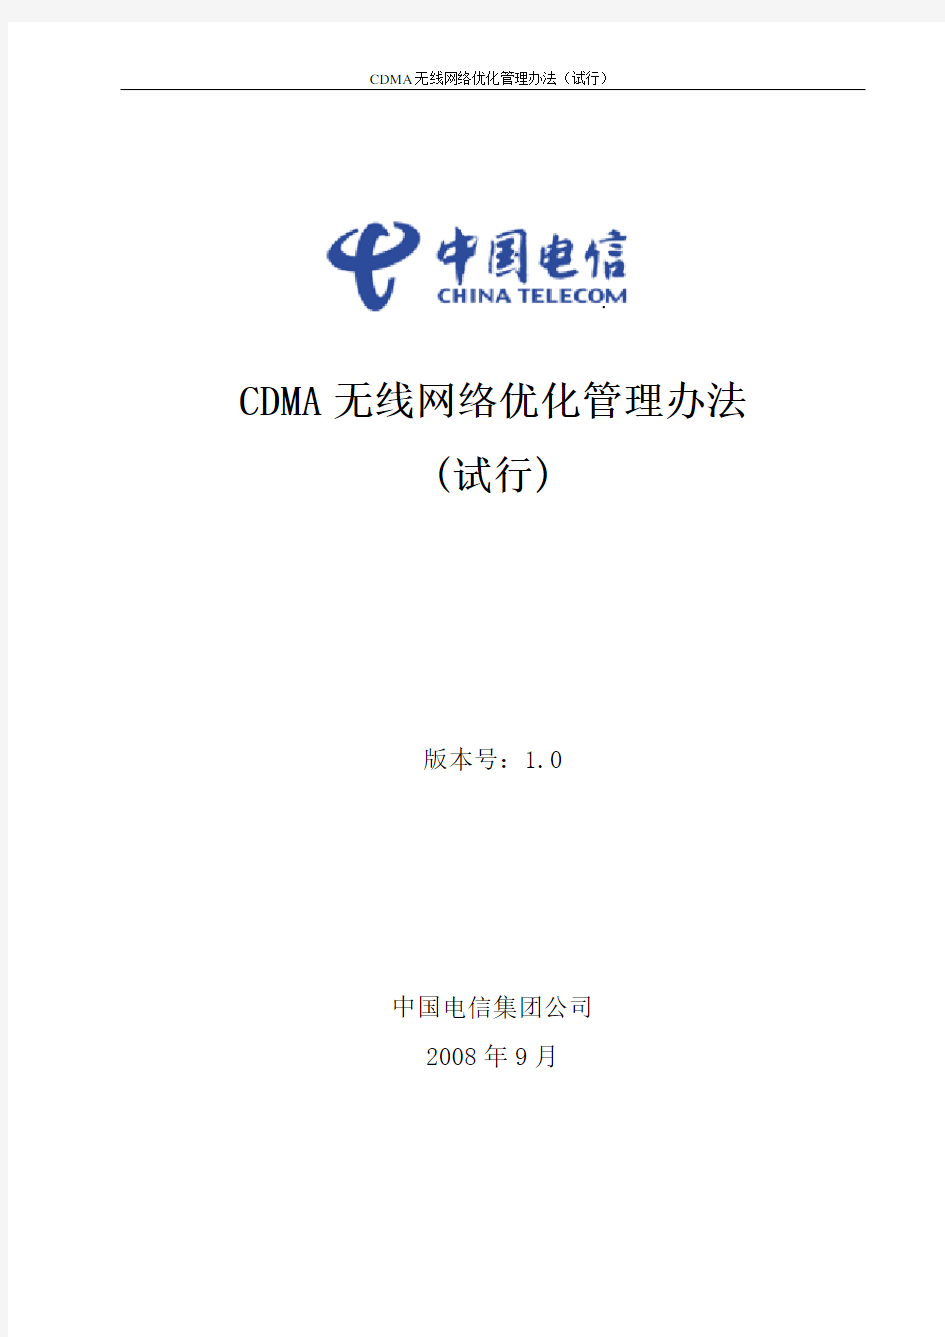 14.网优01.中国电信CDMA网络优化管理办法(试行)